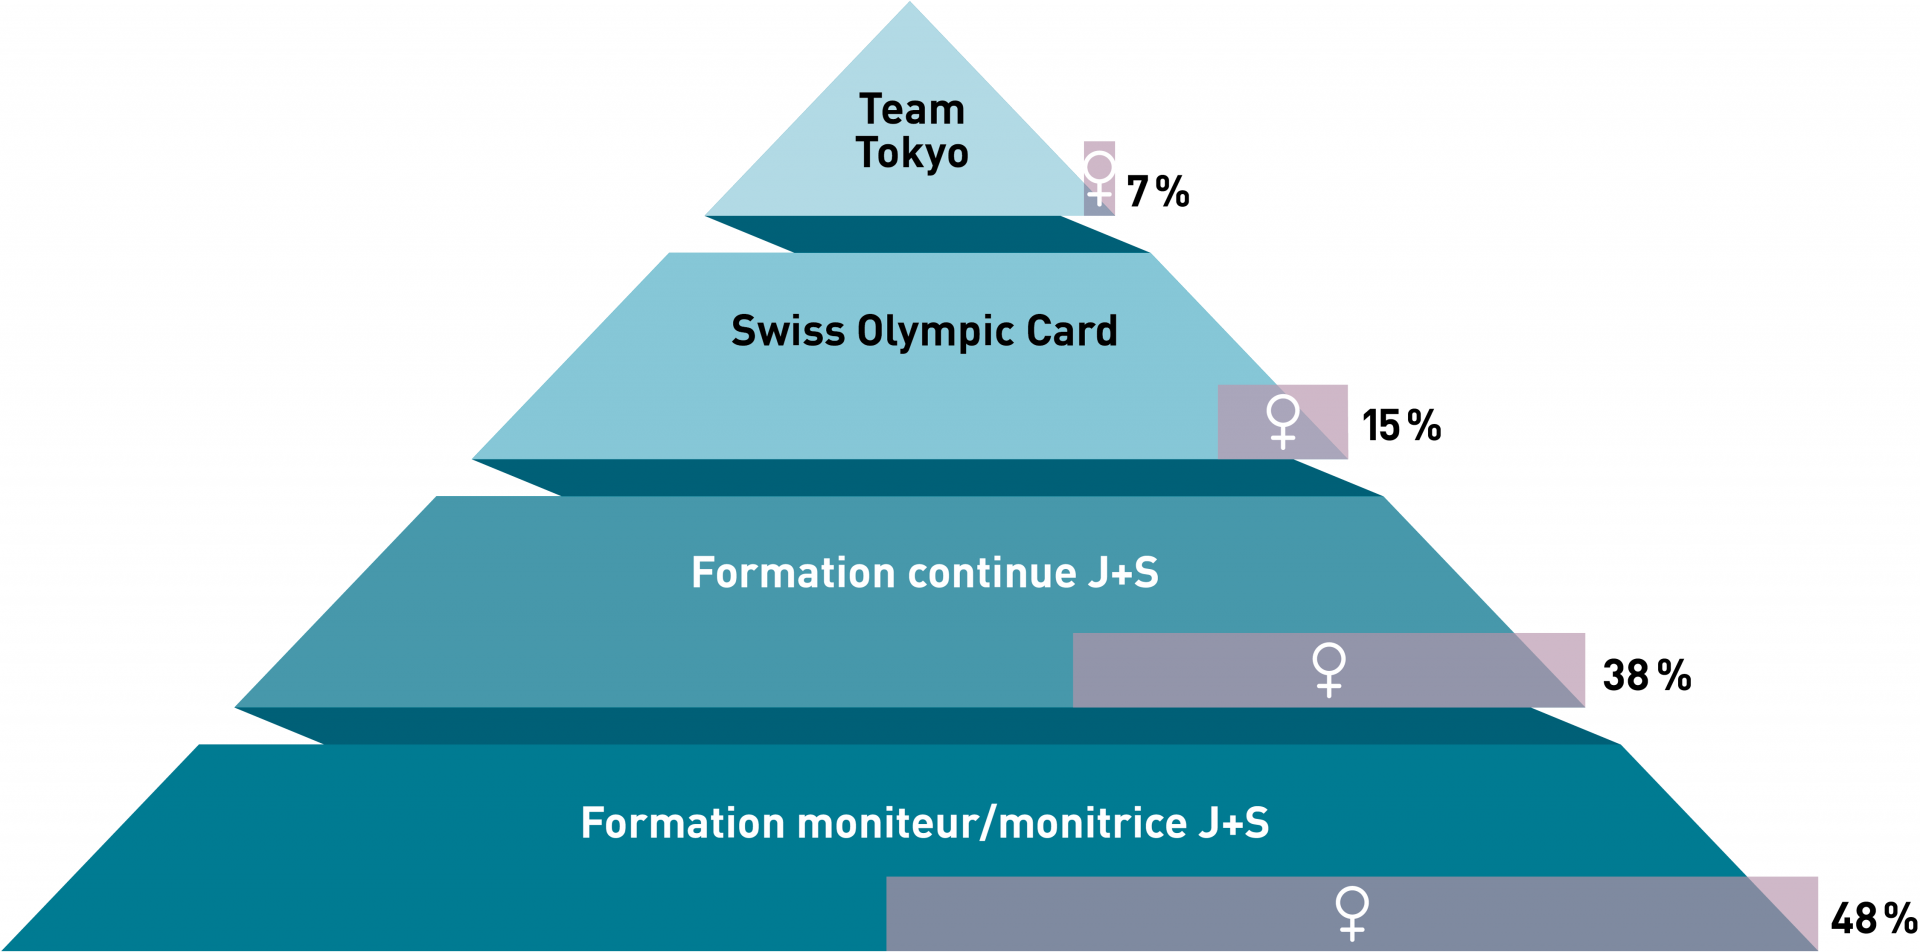 Entraîneuses dans le sport suisse : plus on se rapproche du sport de haut niveau, plus la proportion de femmes diminue.